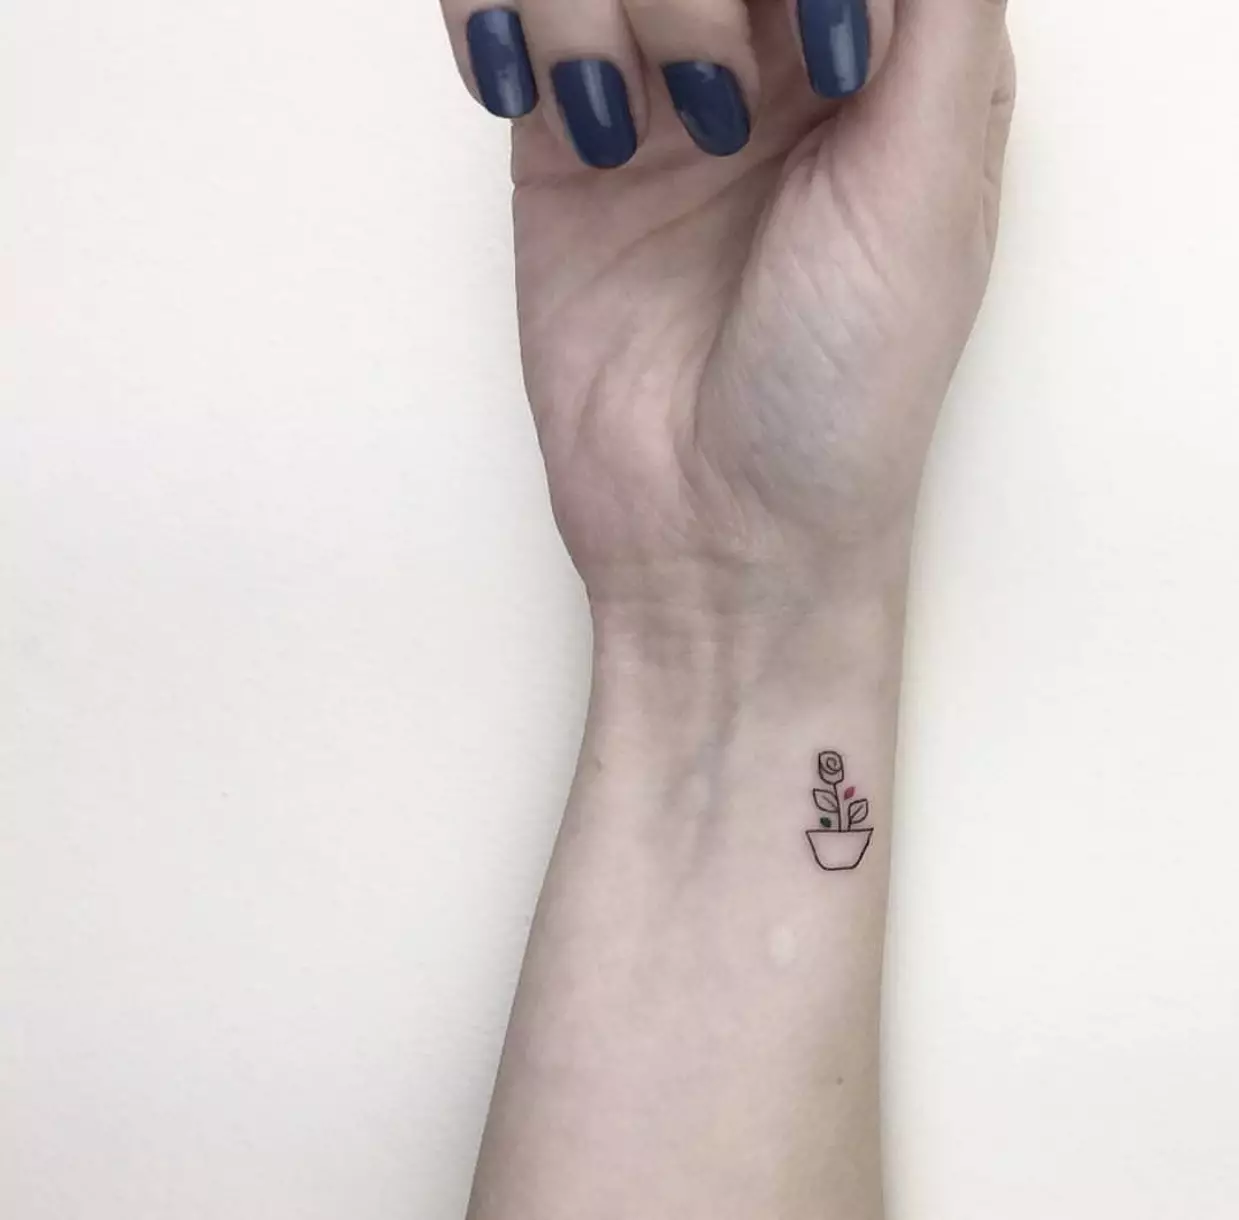 Tatuaggio per ragazze sul polso (80 foto): piccolo tatuaggio con significato e altro, schizzi e significati, bellissimi tatuaggi attorno al polso e al lato 13834_49